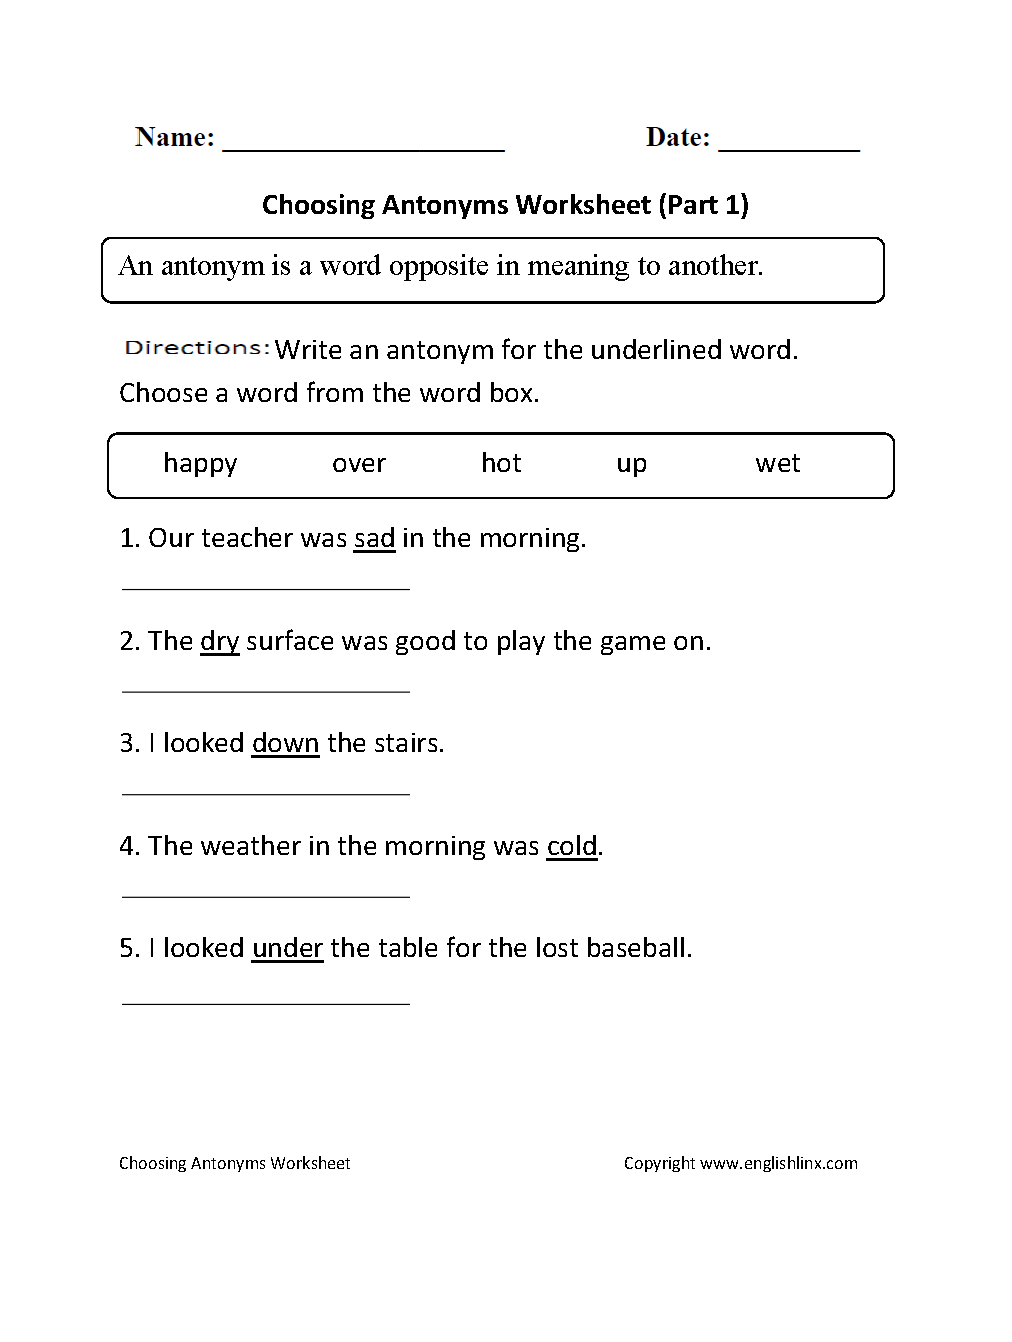 Choosing Antonyms Worksheet Part 1